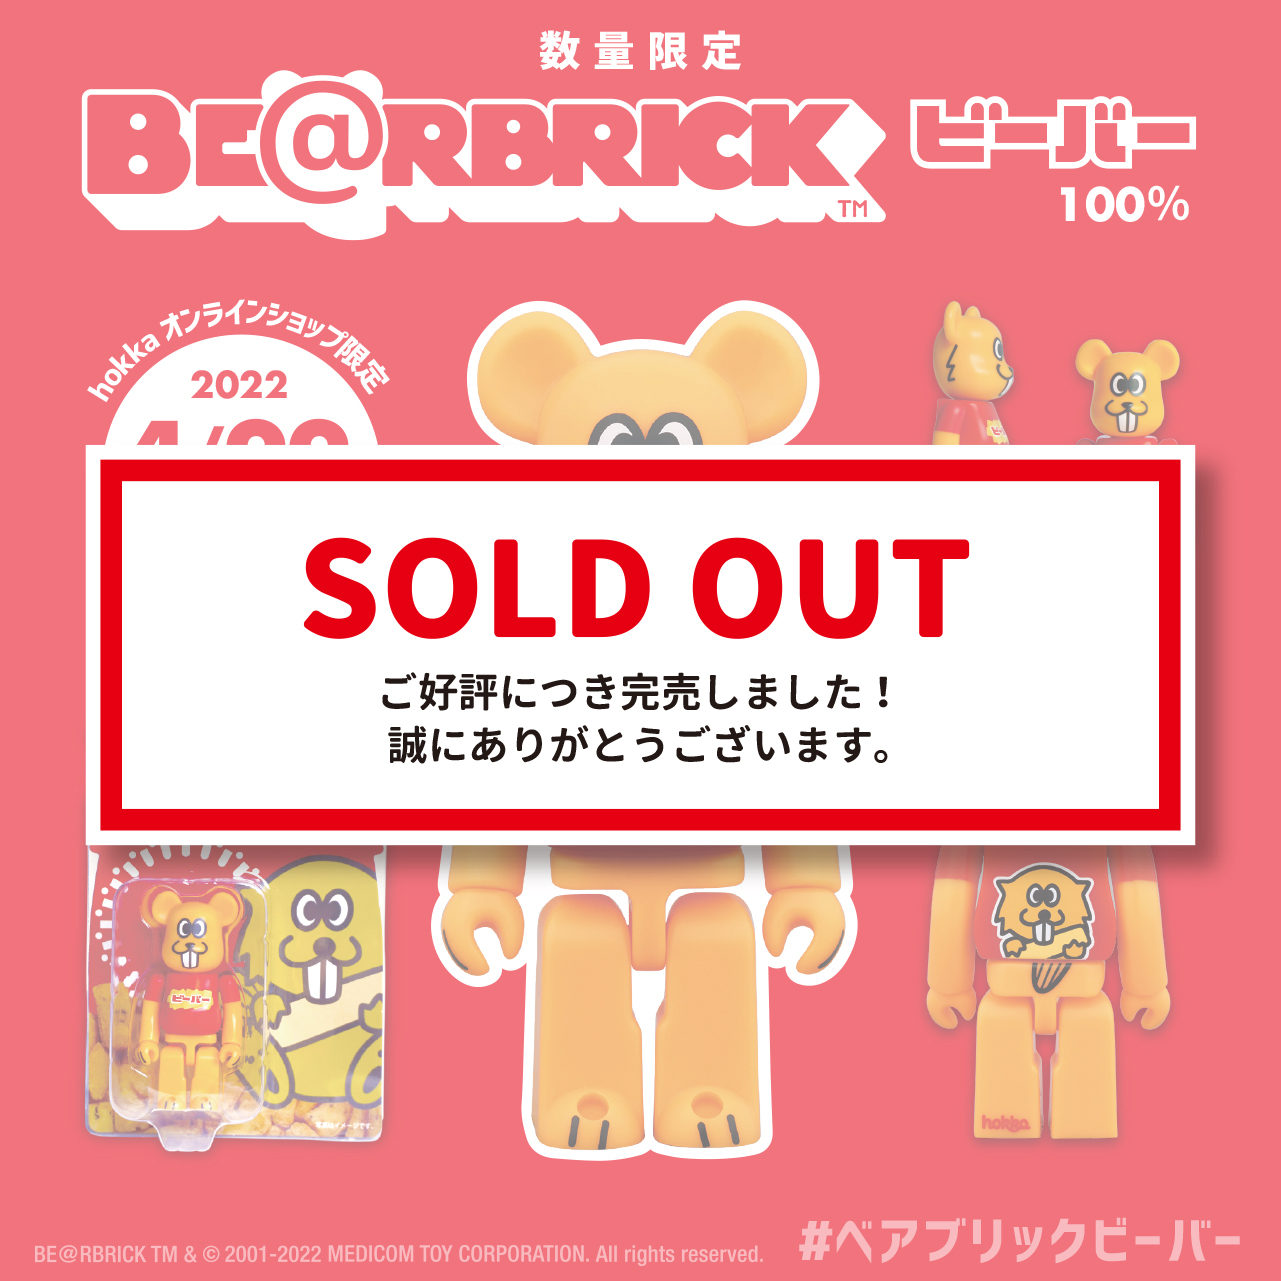 完売しました】のビーバーがクマ型フィギュアに！「BE@RBRICK(ベアブリック)ビーバー」 | hokka/ホッカ 北陸製菓株式会社